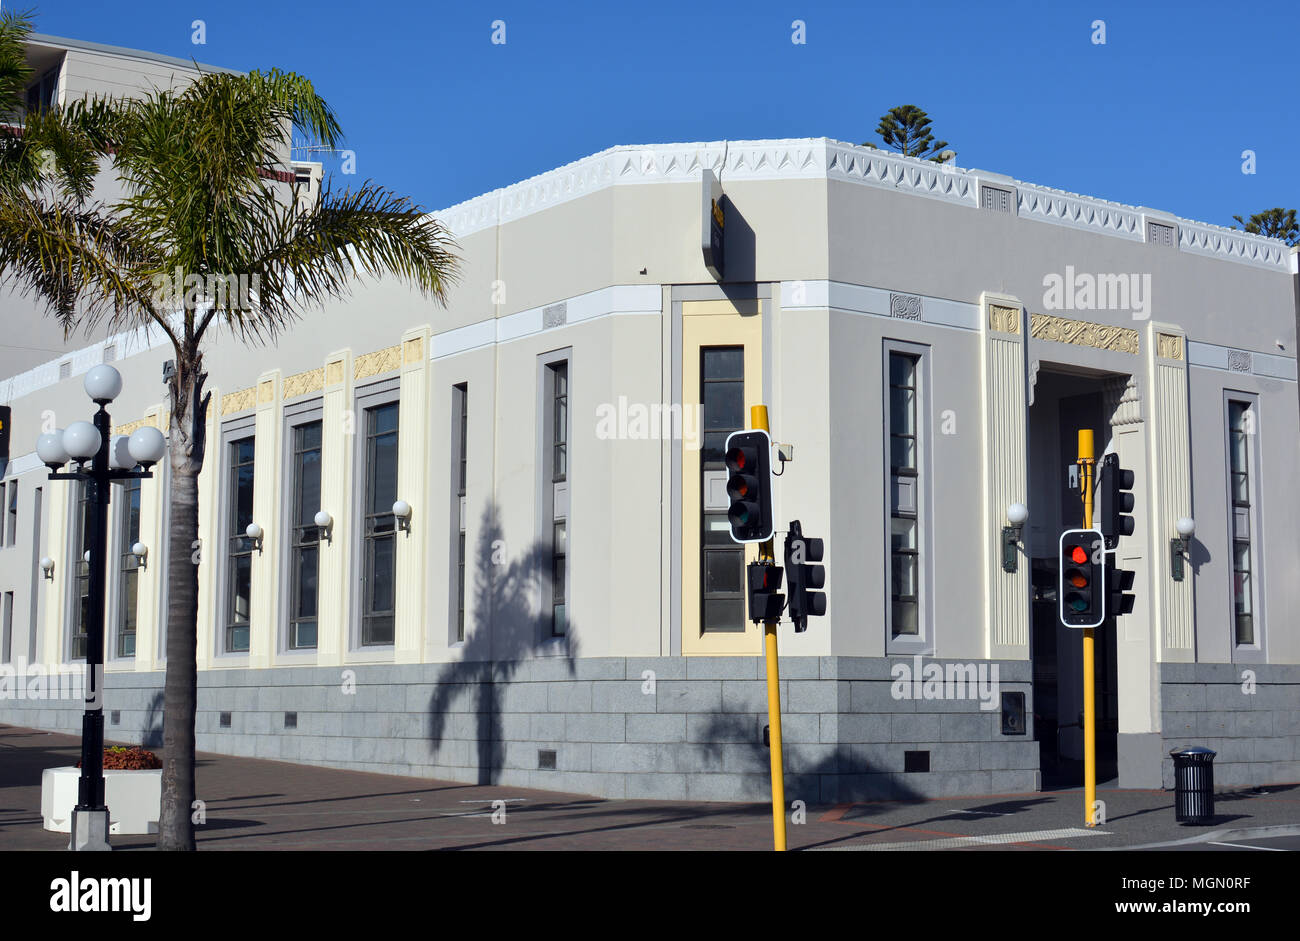 A l'édifice est un exemple de l'architecture de style Art Déco du début des années 30. Avec des motifs et dessins maoris. Banque D'Images